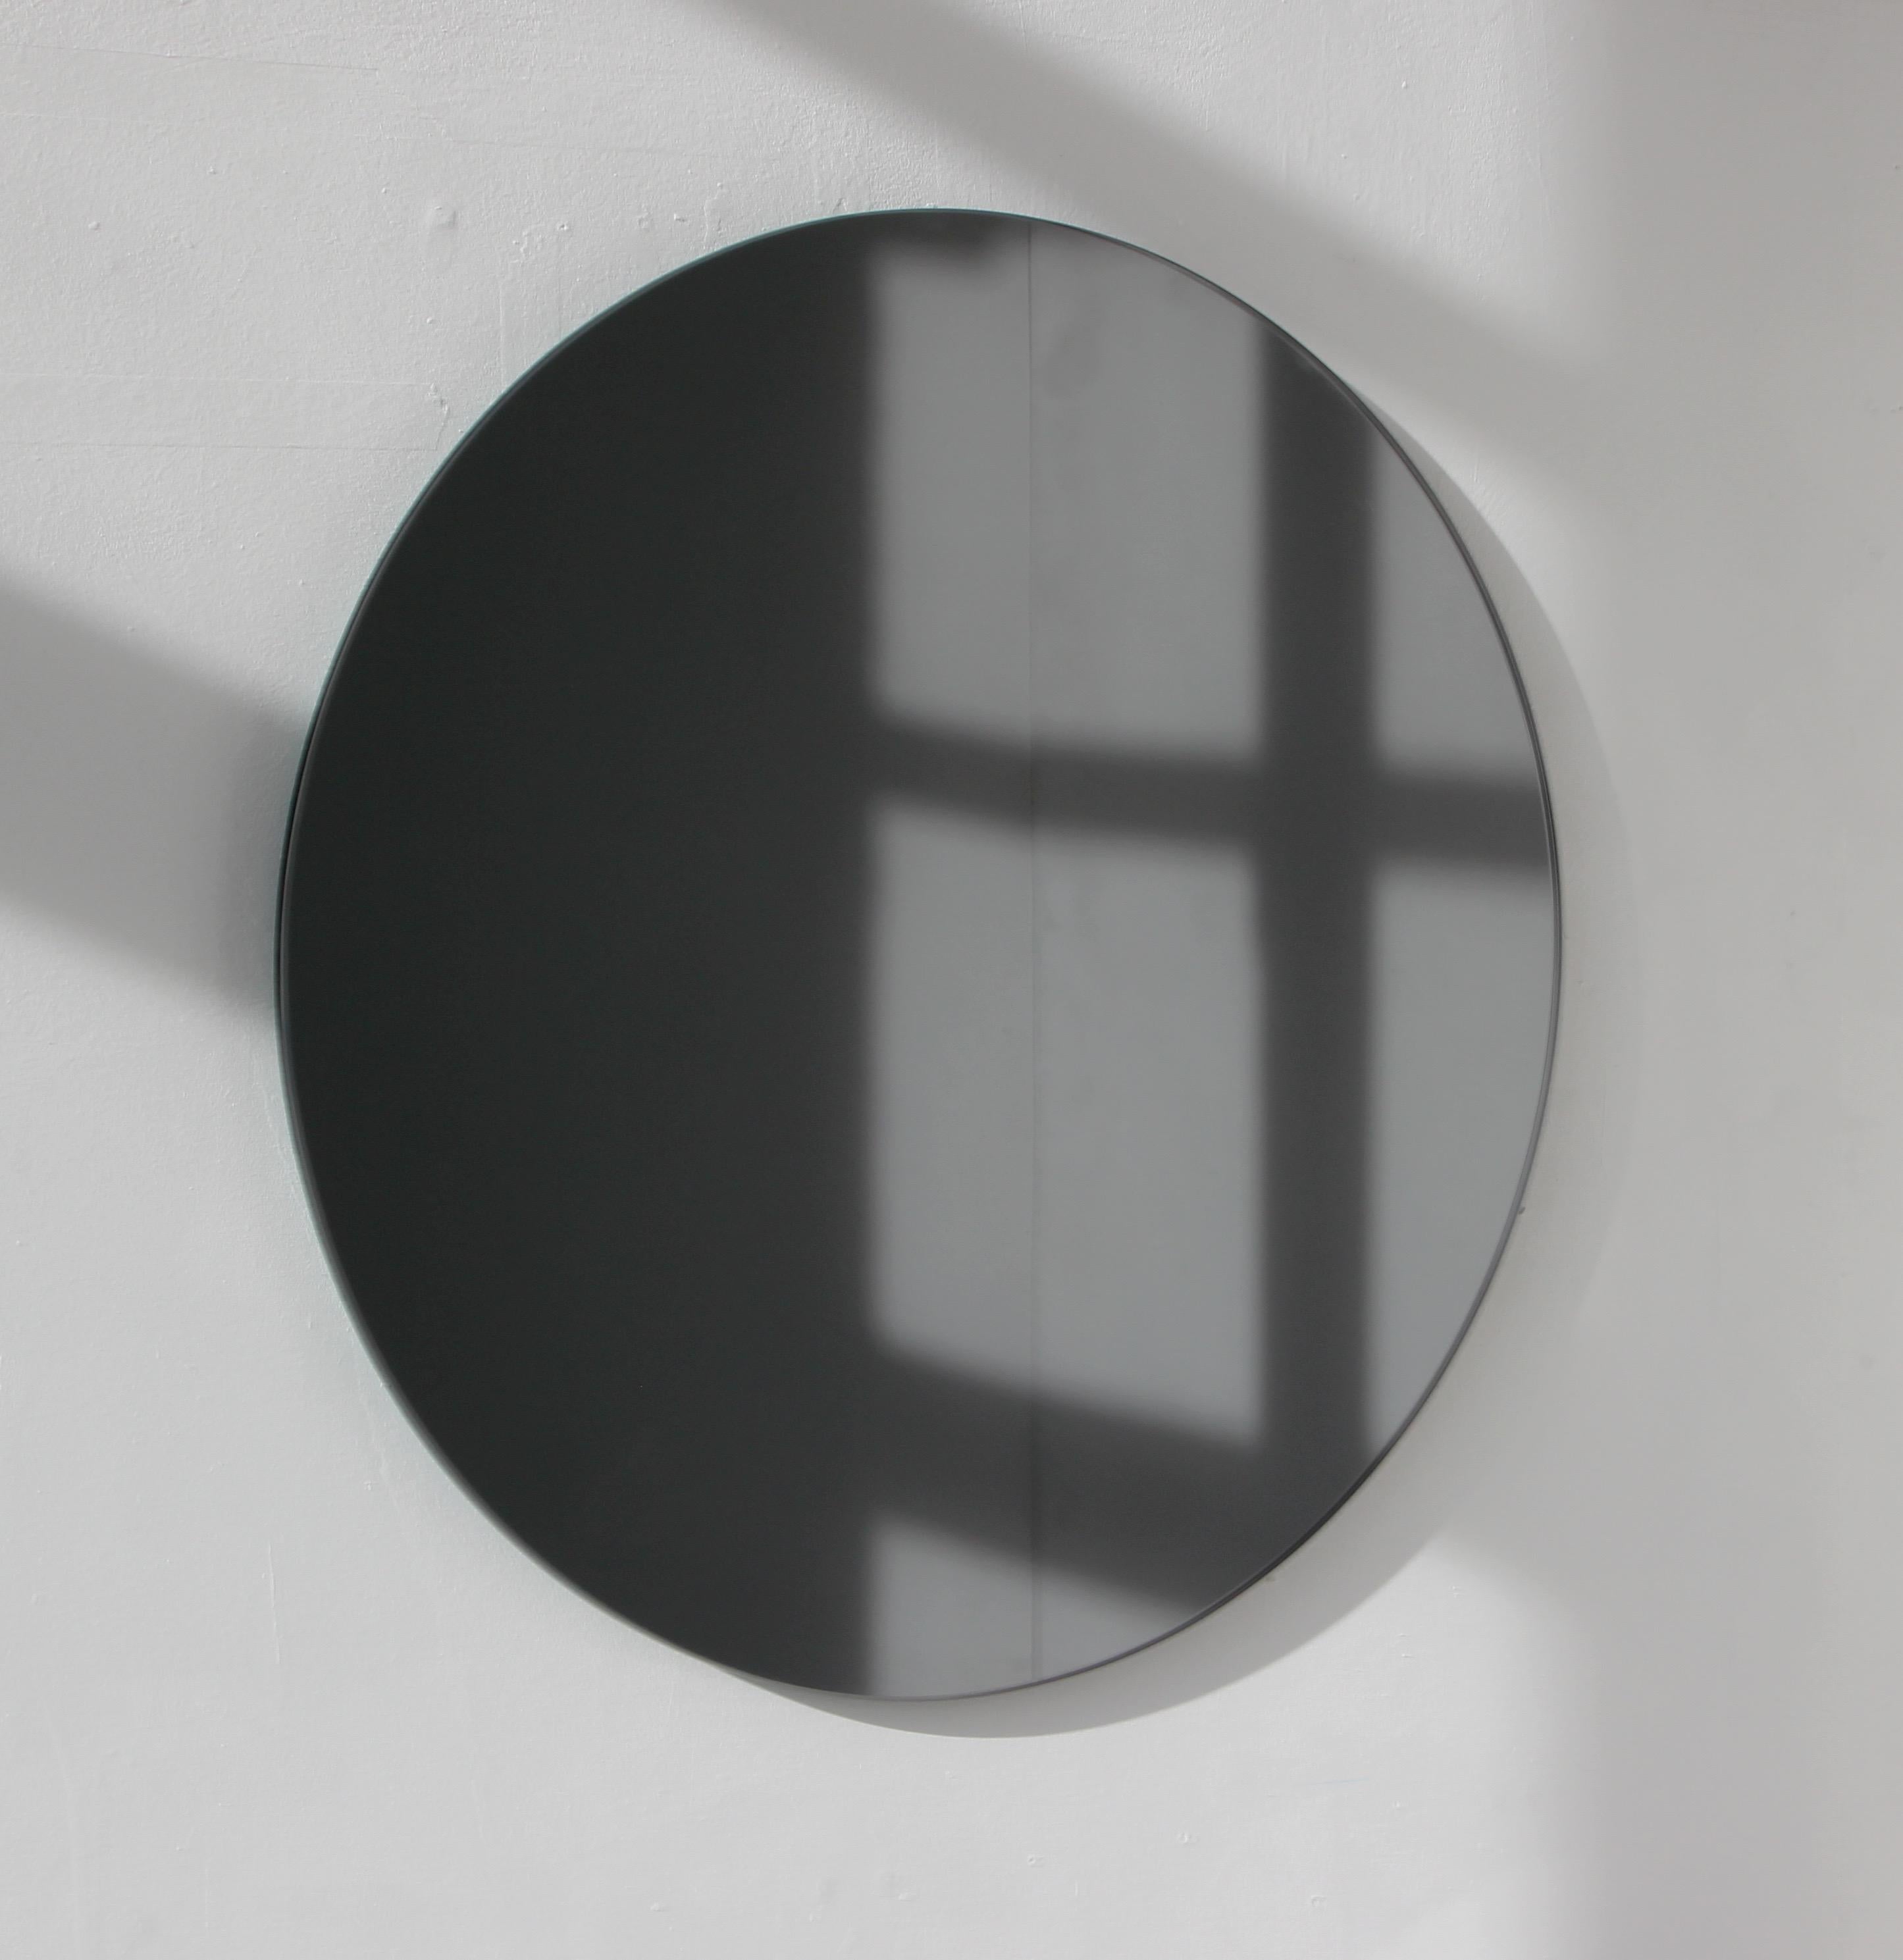 Charmant et minimaliste miroir rond sans cadre teinté noir avec un effet flottant. Un design de qualité qui garantit que le miroir est parfaitement parallèle au mur. Conçu et fabriqué à Londres, au Royaume-Uni.

Equipé de plaques professionnelles